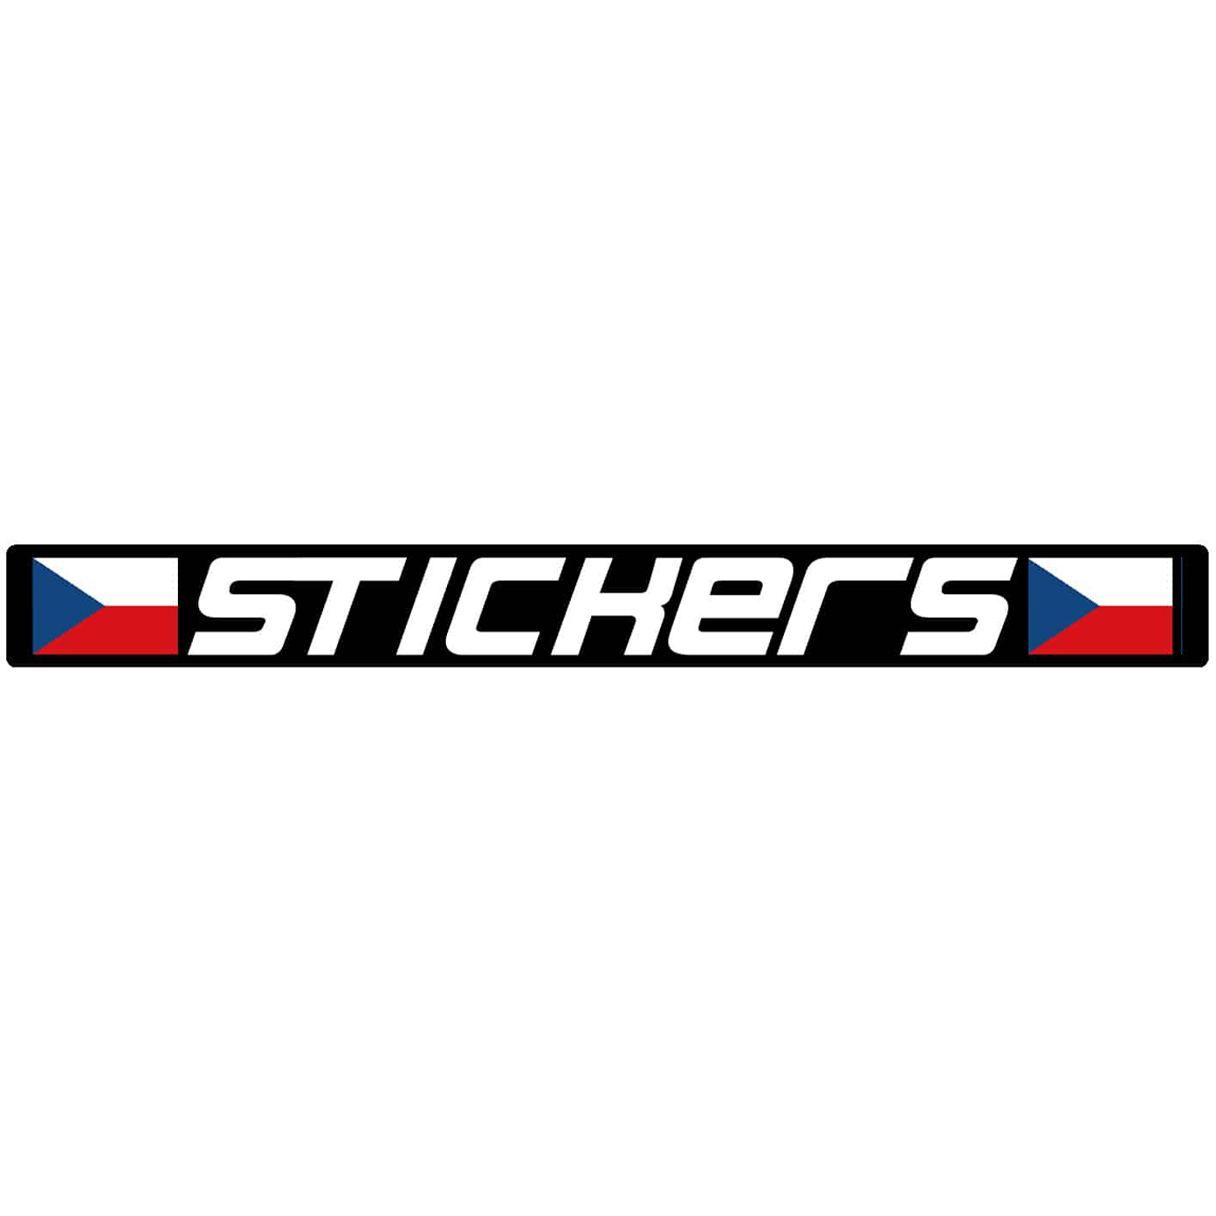 Ishockeyklistremerker - type S2 (2× logoer + tekst)